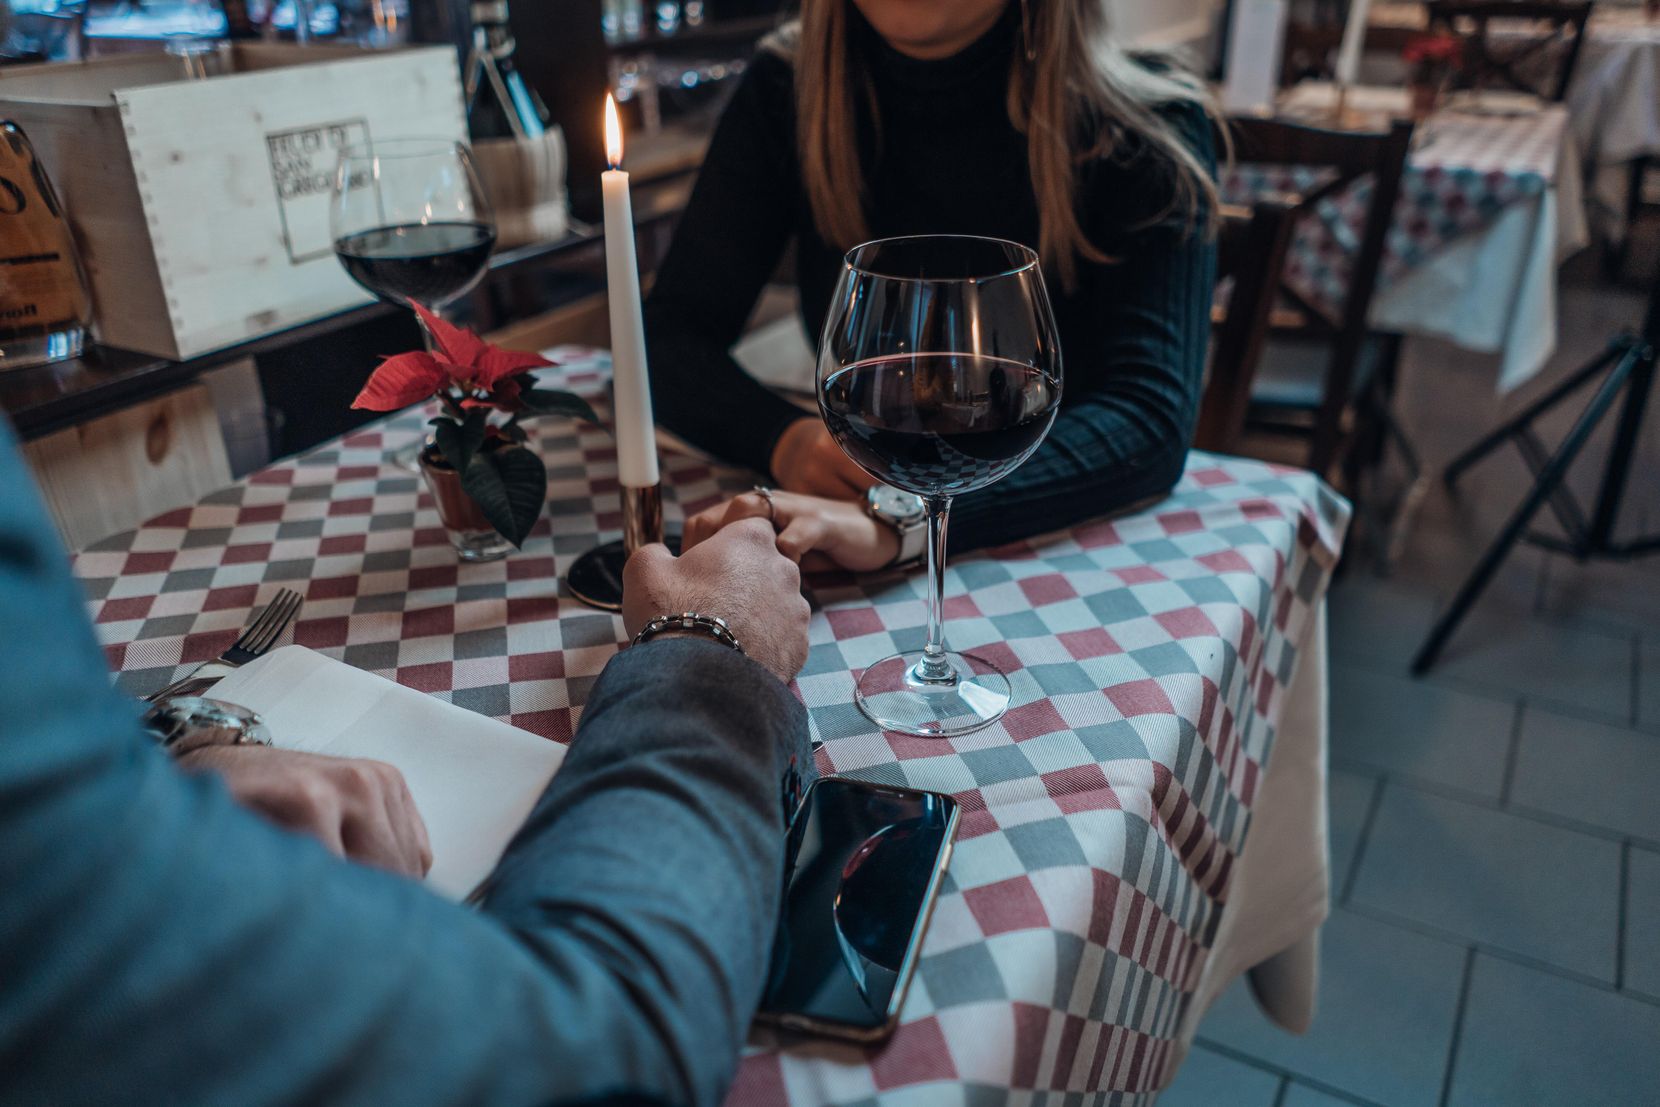 Paar, das an einem Tisch sitzt und sich an den Händen hält, jede Person ein Glas Rotwein neben sich, die Köpfe sind nicht zu sehen.